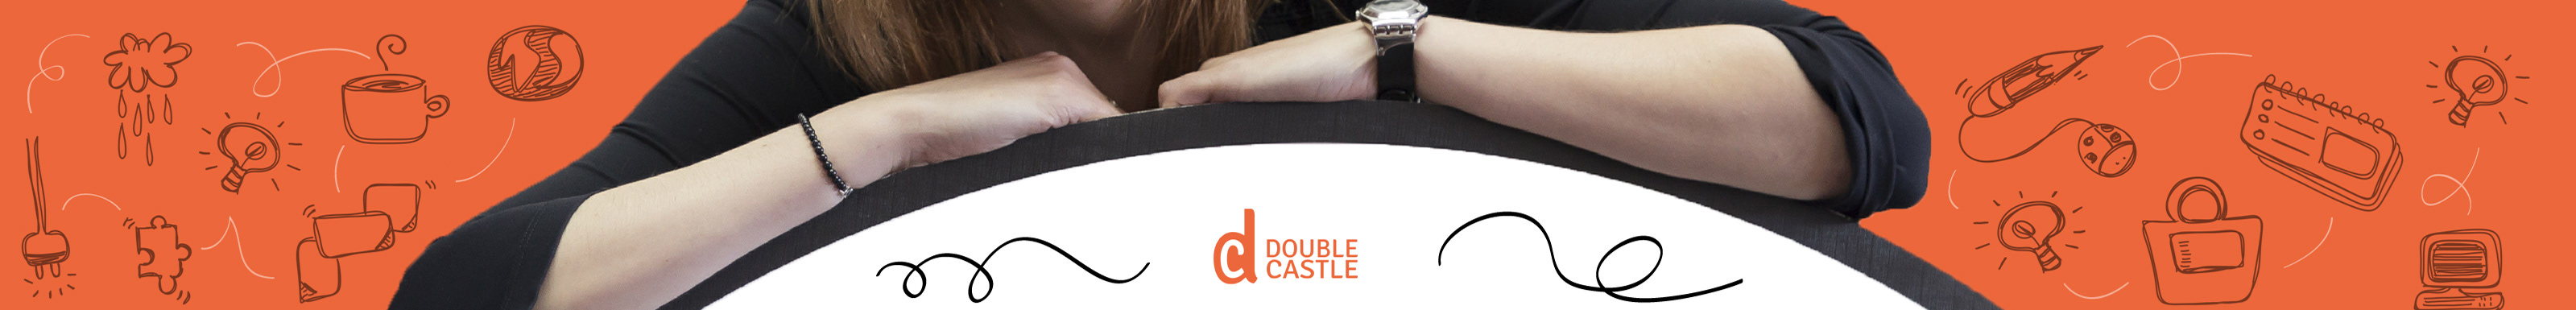 Banner de perfil de Double Castle